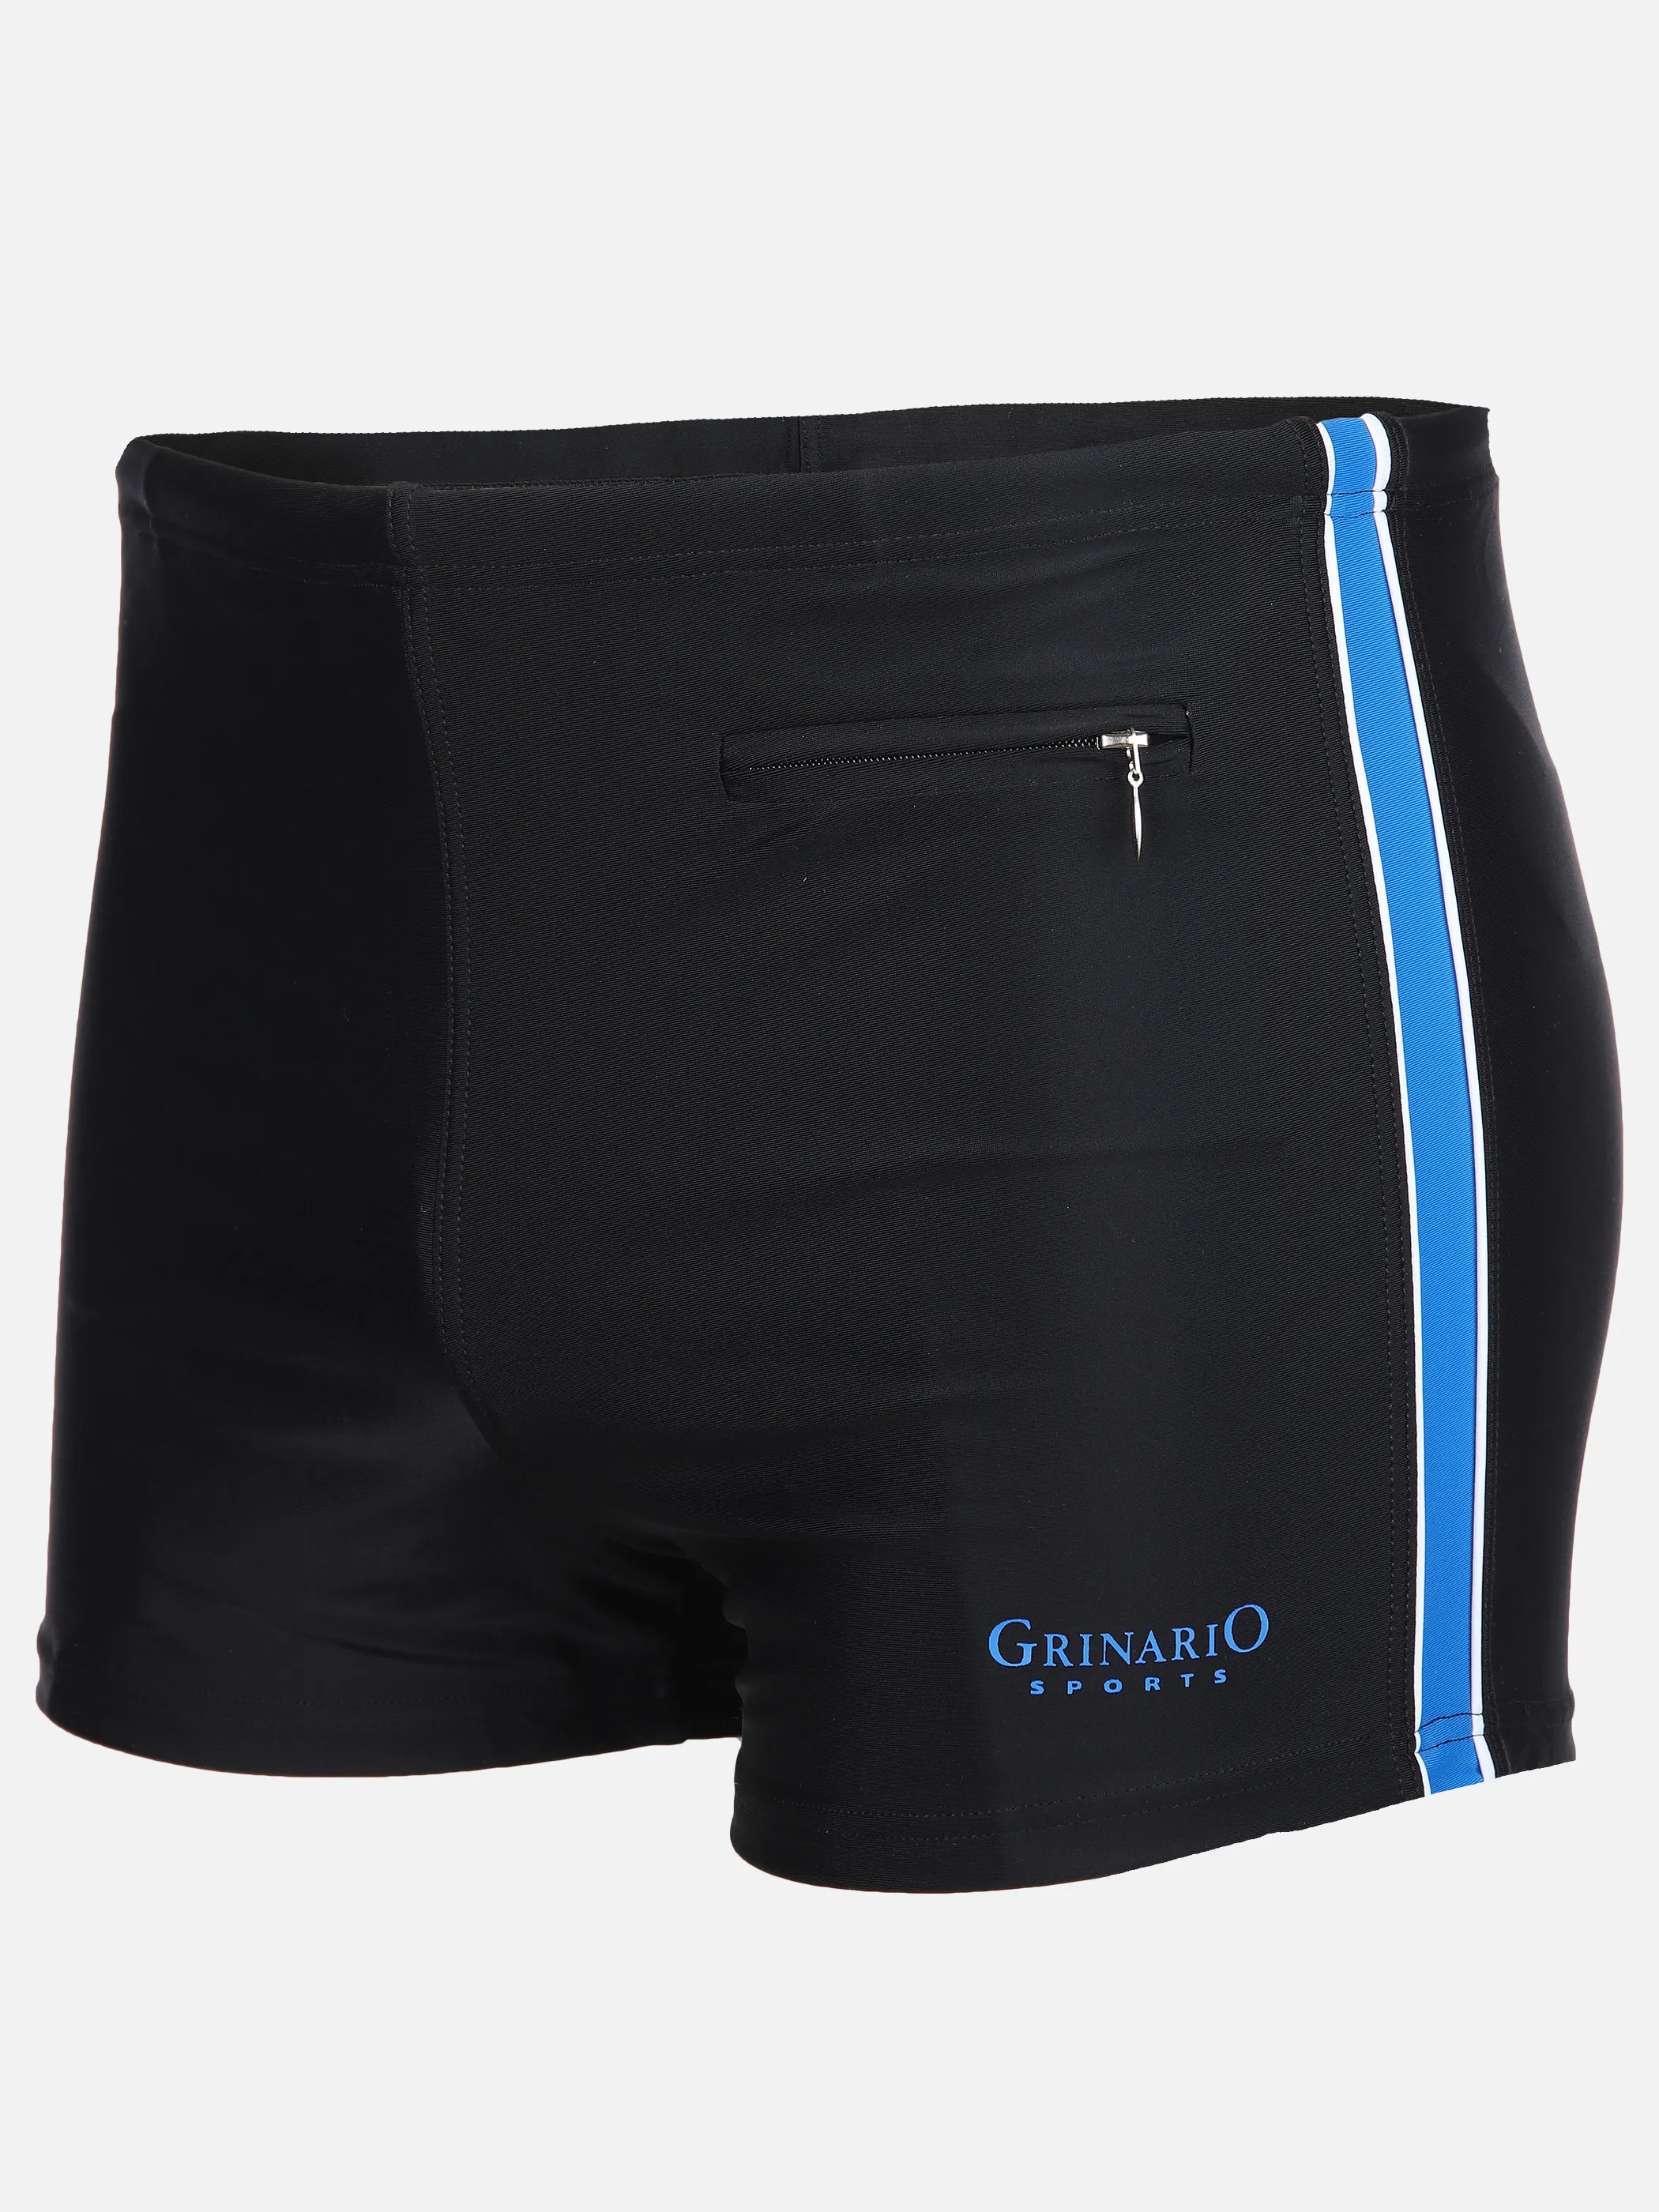 Grinario Sports He- Badehose mit RV Tasche Blau 890133 19-4151TCX 1